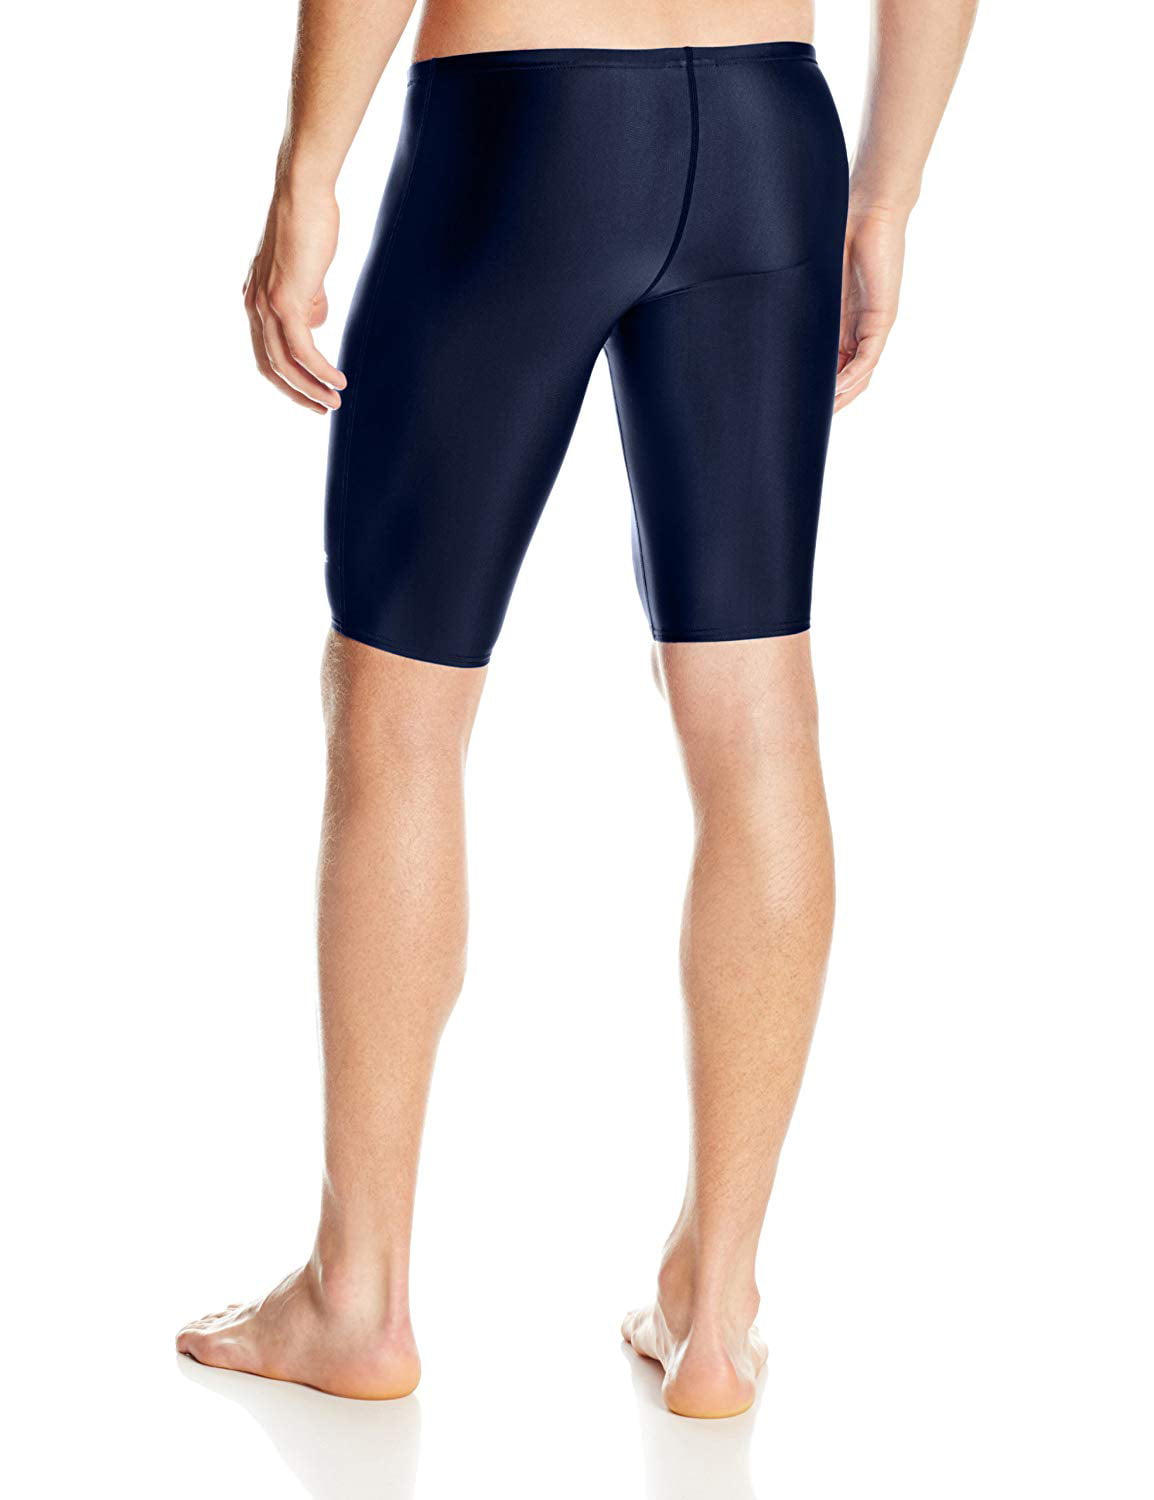 Speedo Men's Pro Lt Jammer Swimsuit in Navy Size 32 - Walmart.com